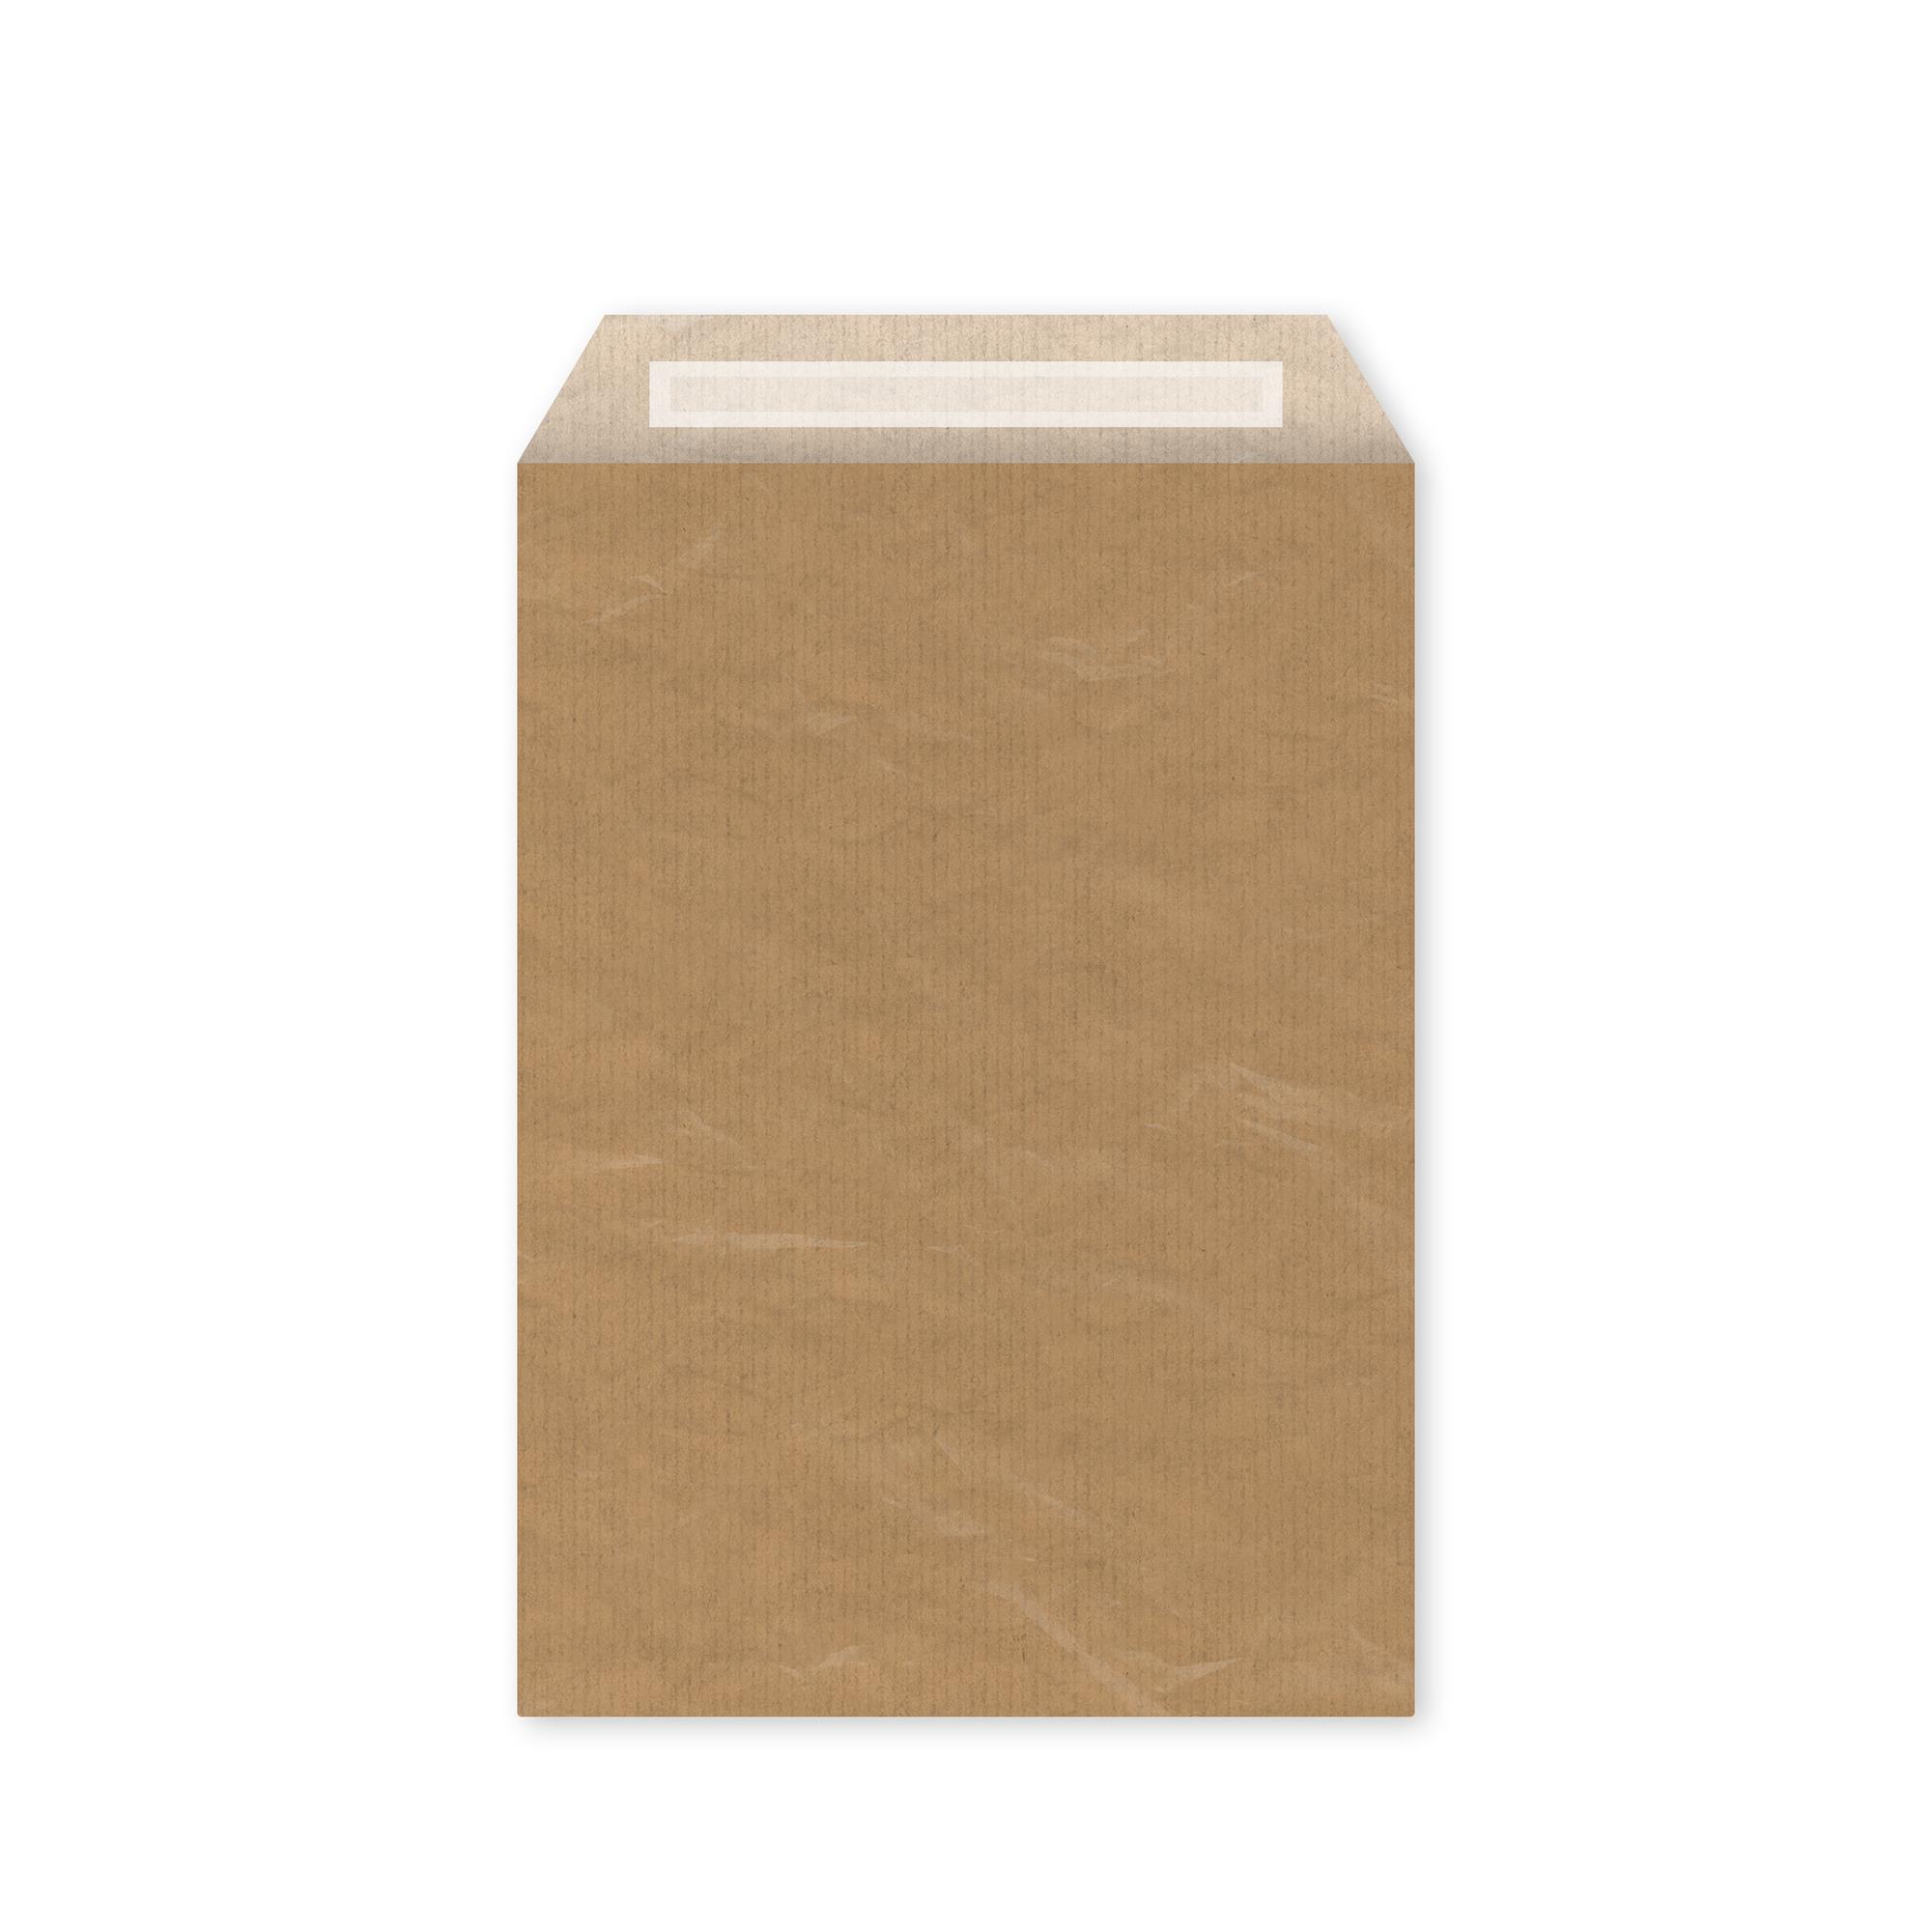 Bantlı Hediye Paketi Kağıt Altın Sarısı 25x6x30,5 cm - 25 Adet